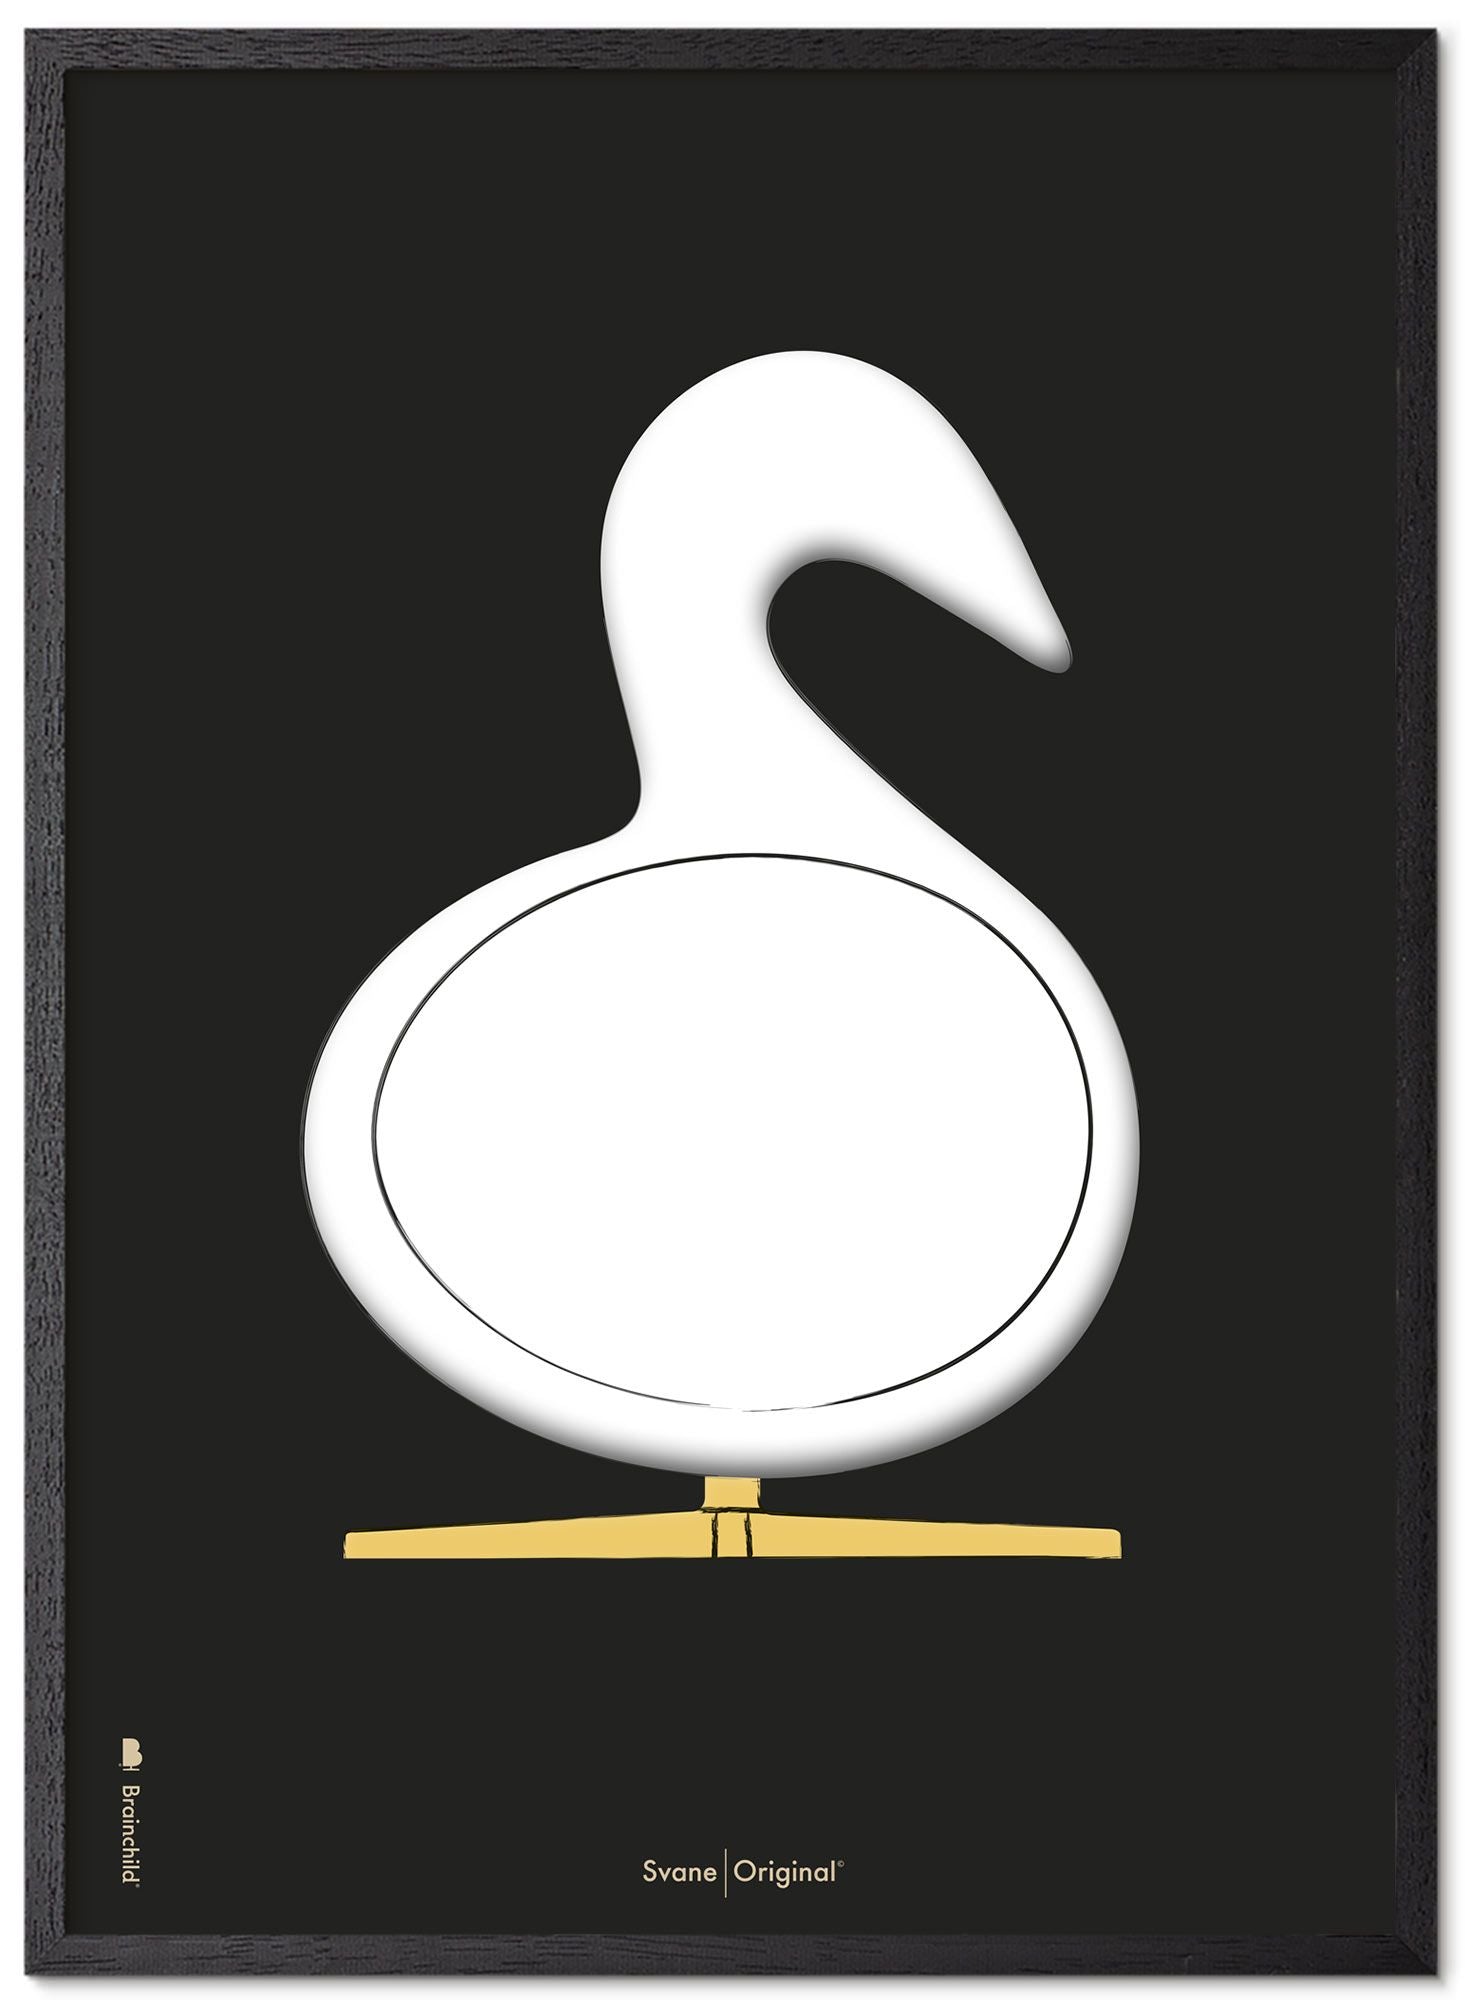 Schema poster di schizzo del disegno del cigno da gioco realizzato in legno laccato nero A5, sfondo nero